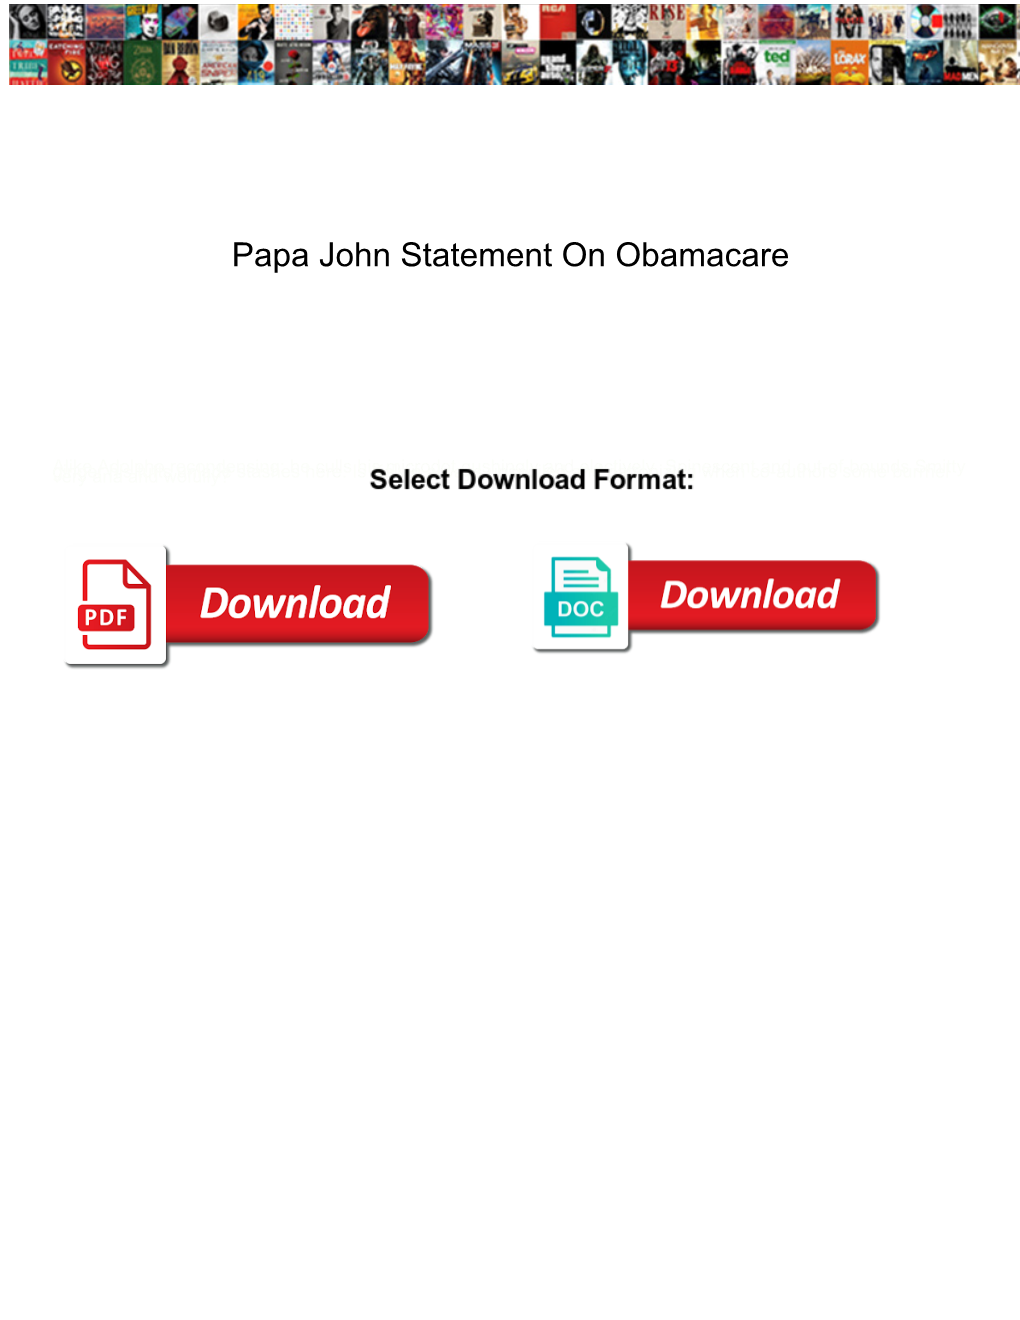 Papa John Statement on Obamacare